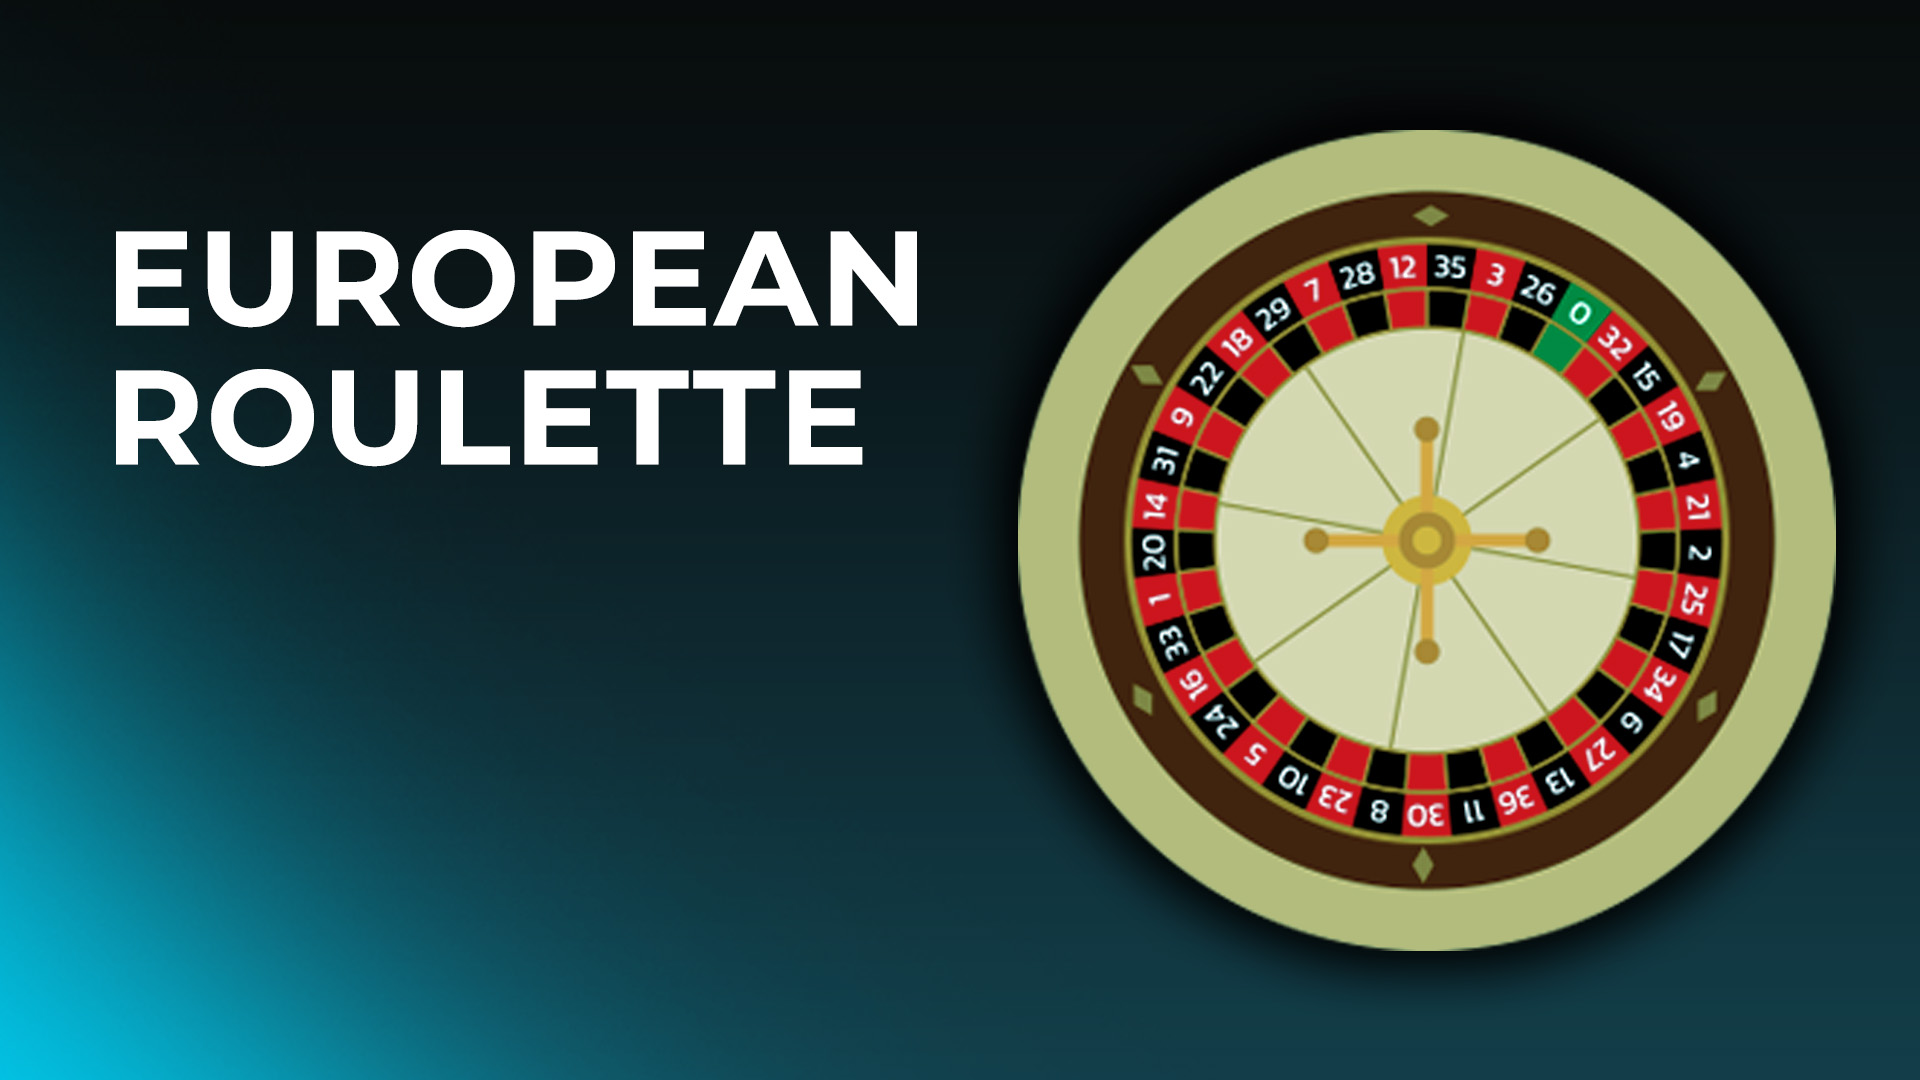 European roulette wheel visualised